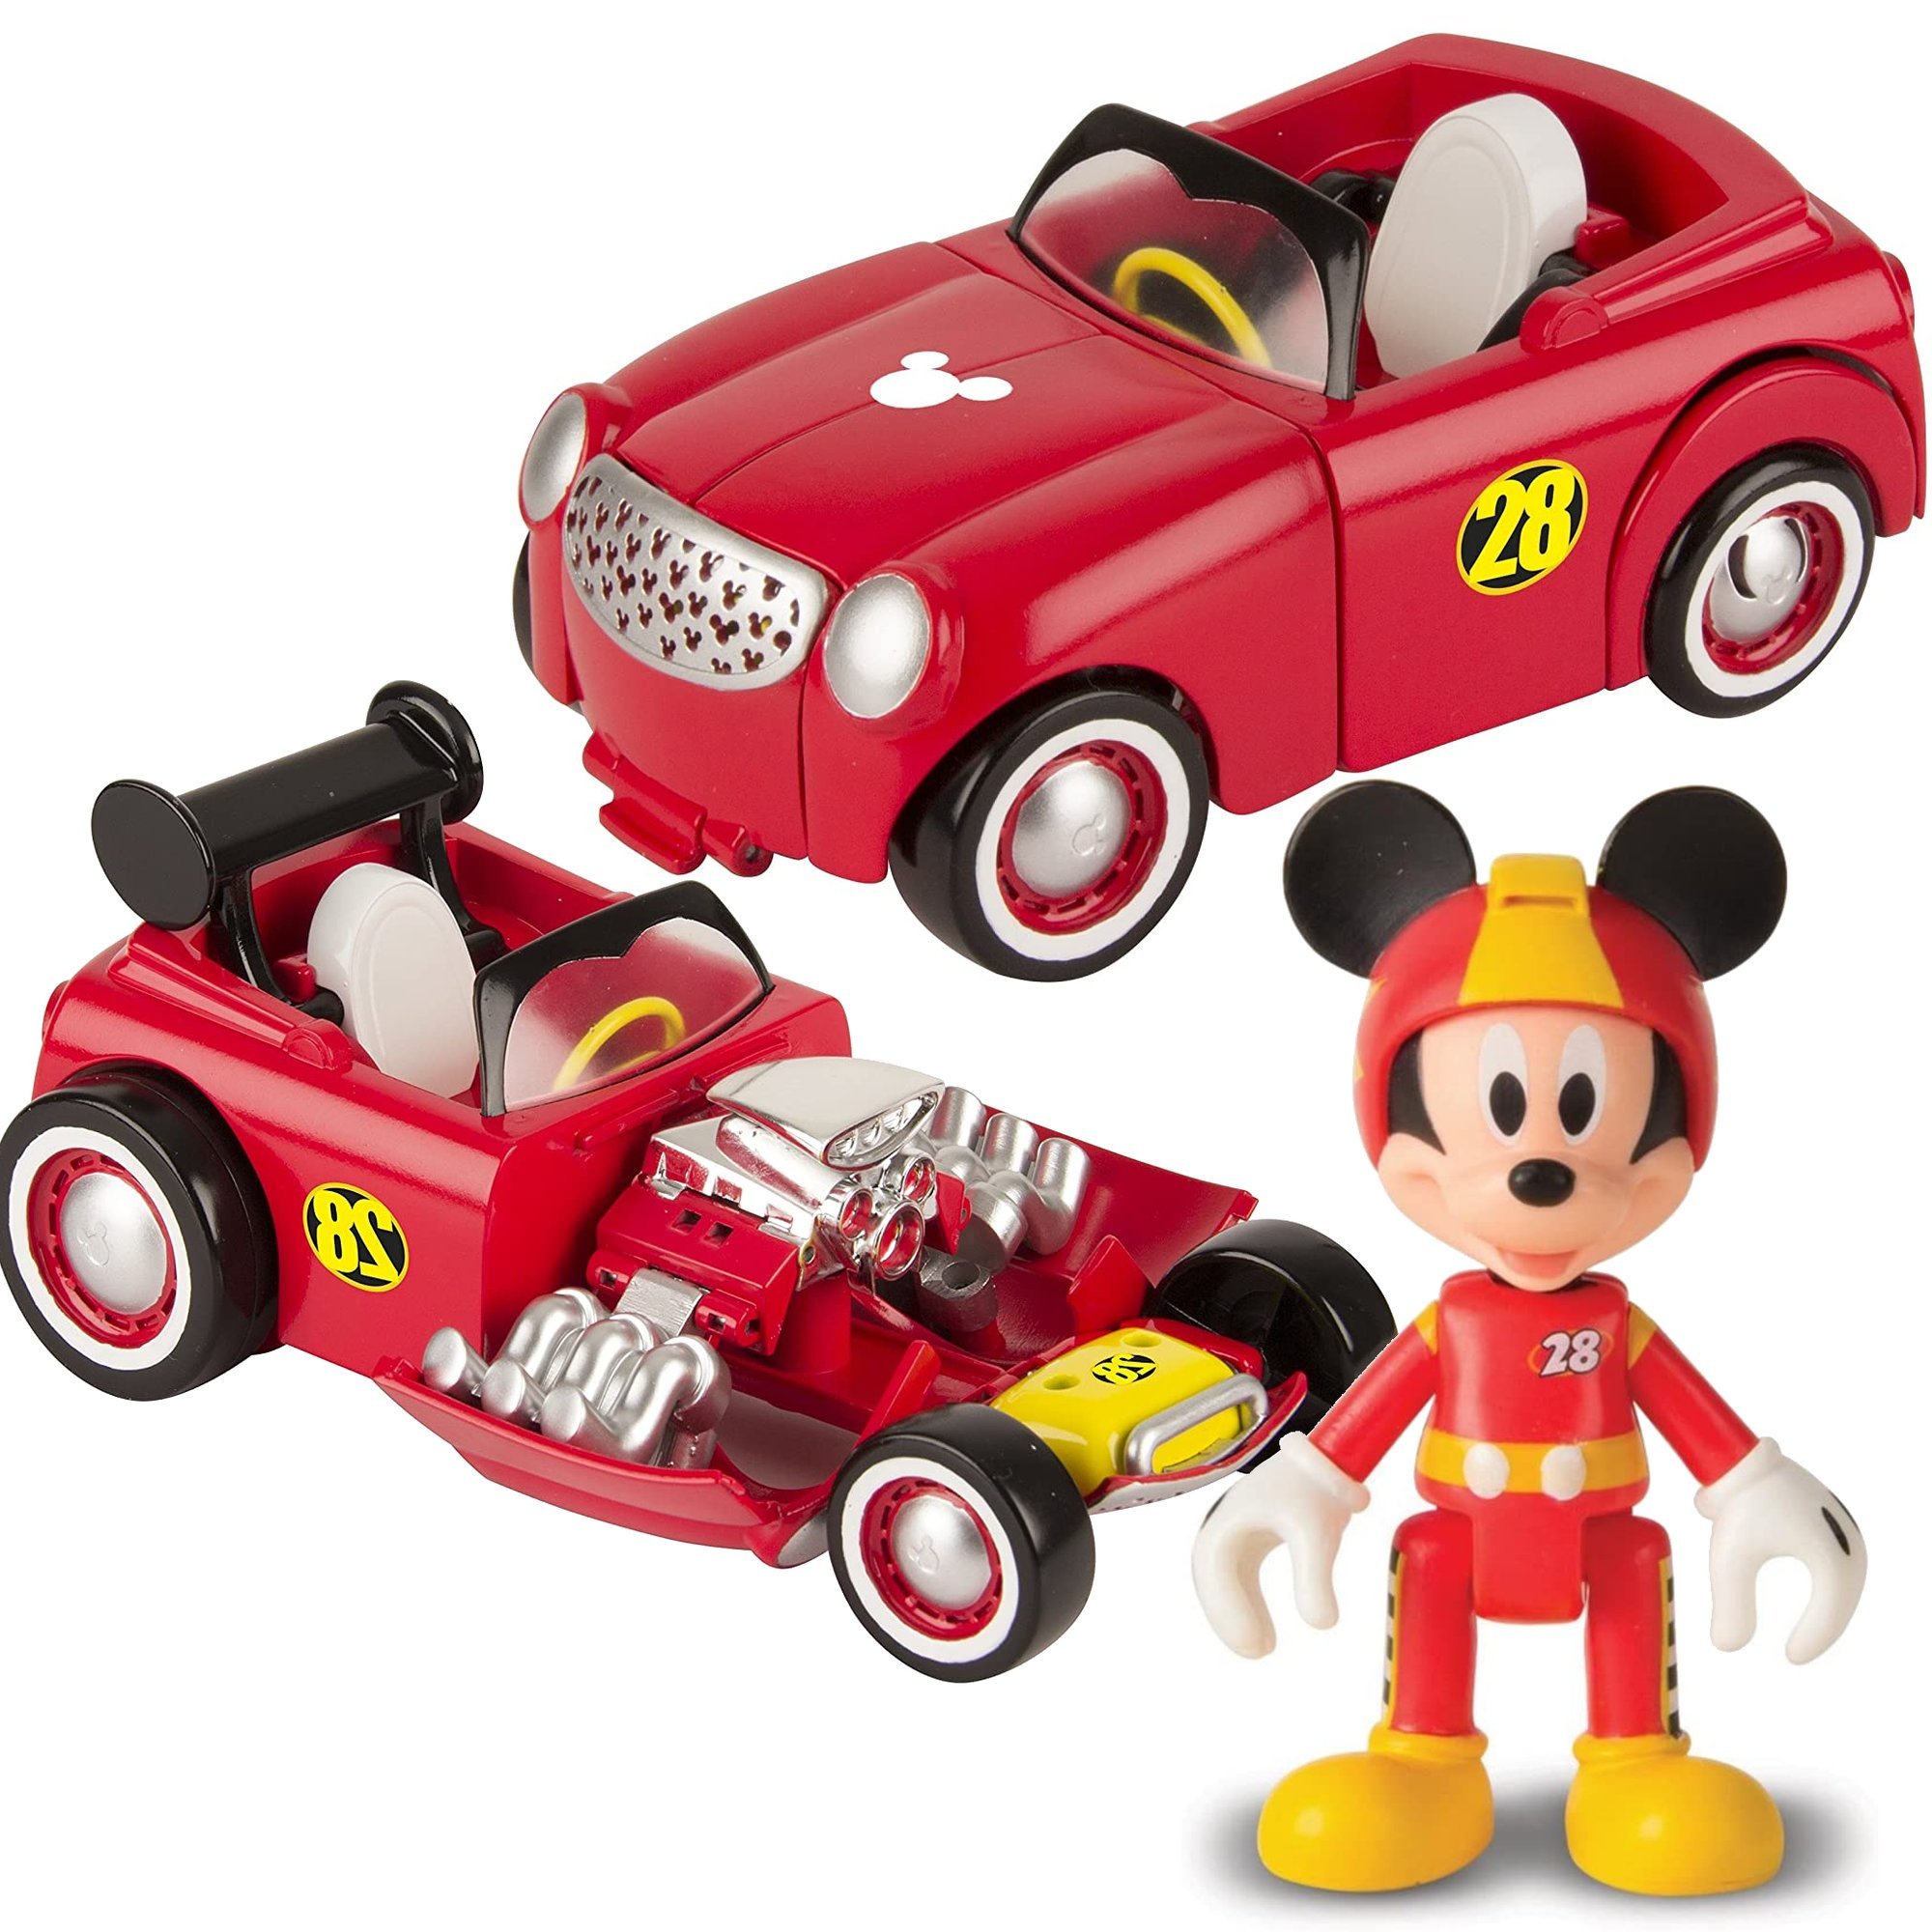 IMC Toys Mickey pojazd transformuj±cy z figurk±